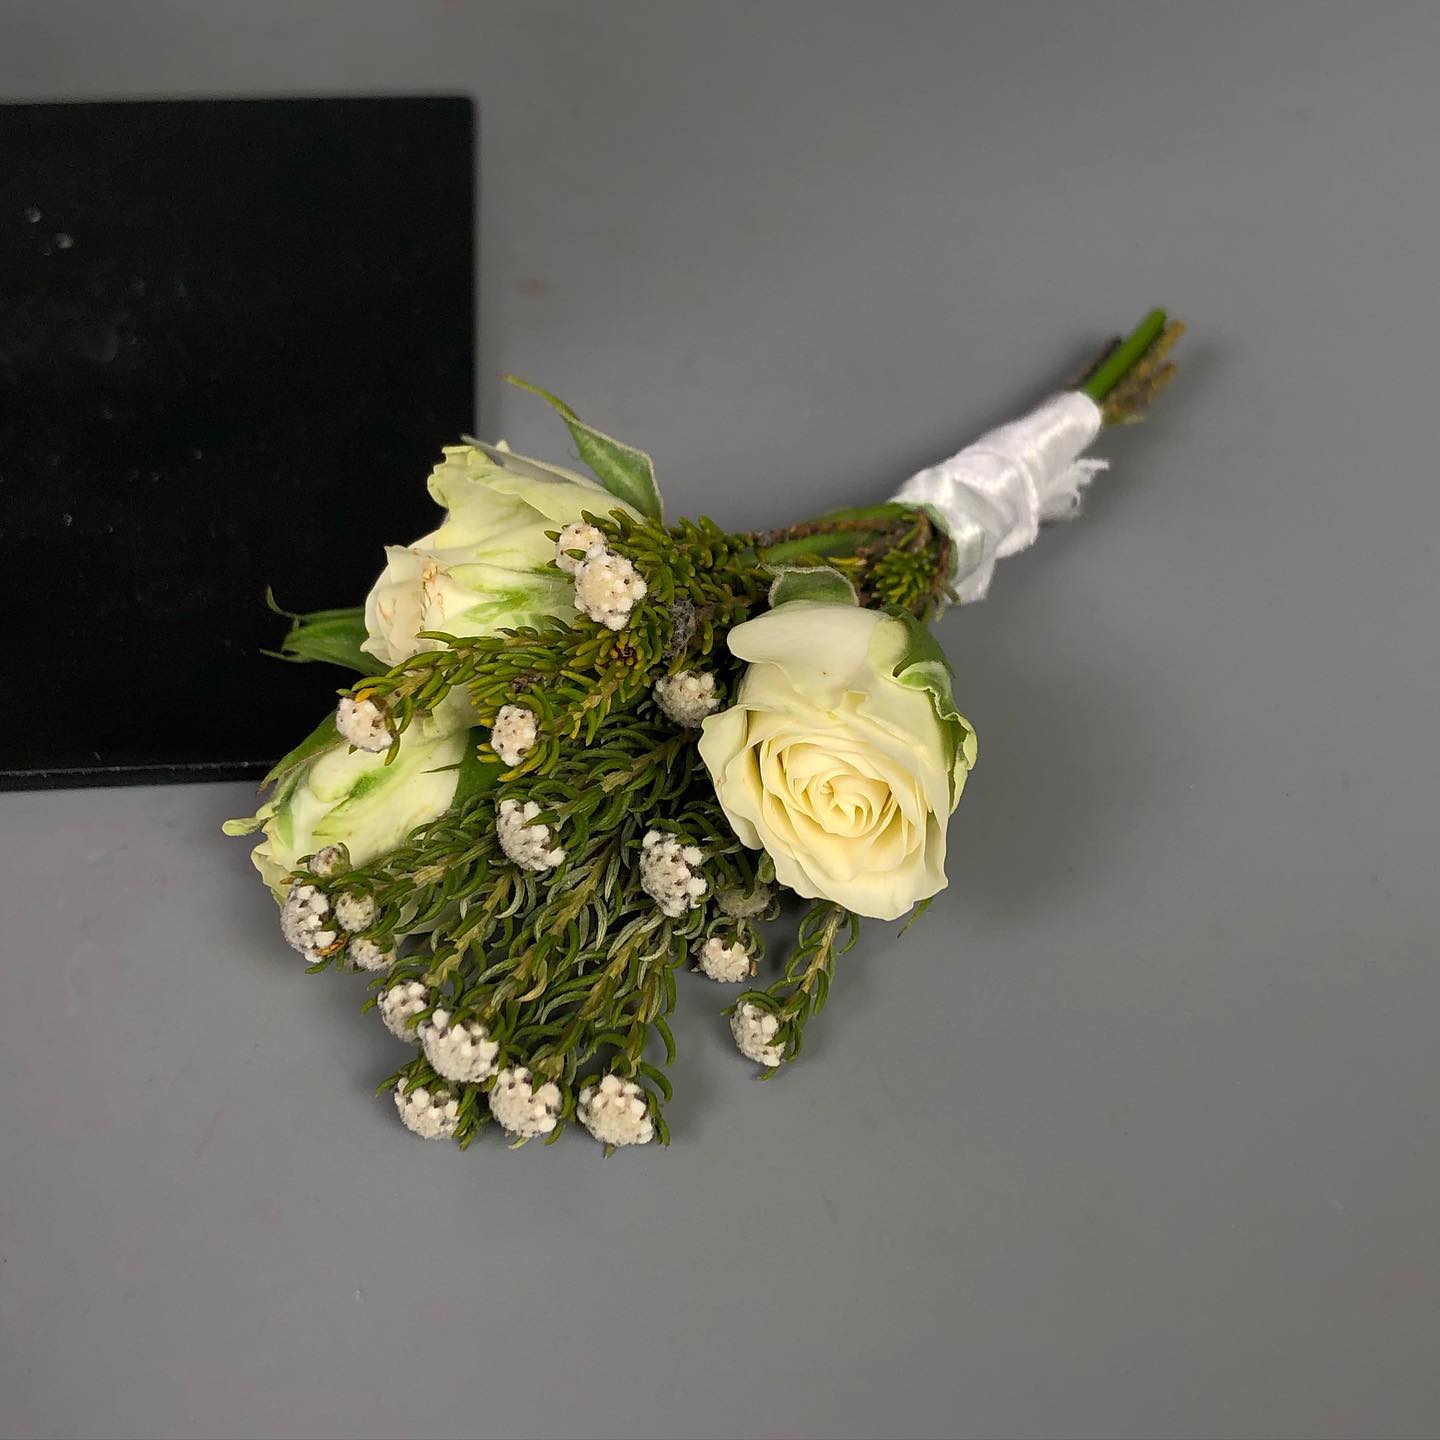 букет из розовых пионов, персиковых пионовидных роз, кустовых роз, капса и эвкалипта